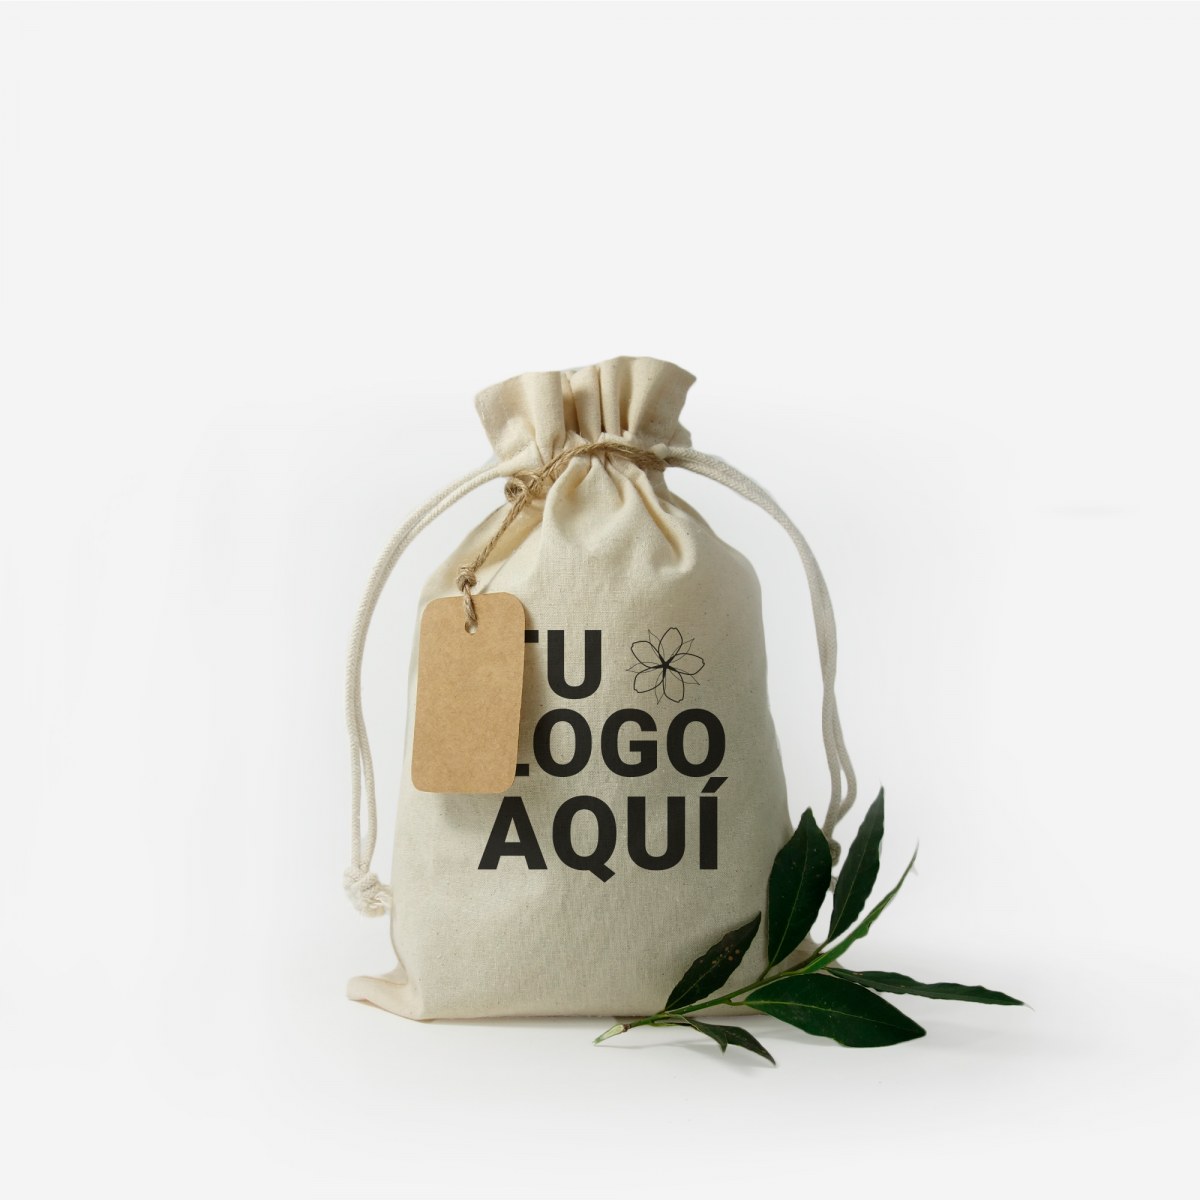 Multipurpose Reusable Cotton Bags X-Large 14x17 – Leafico